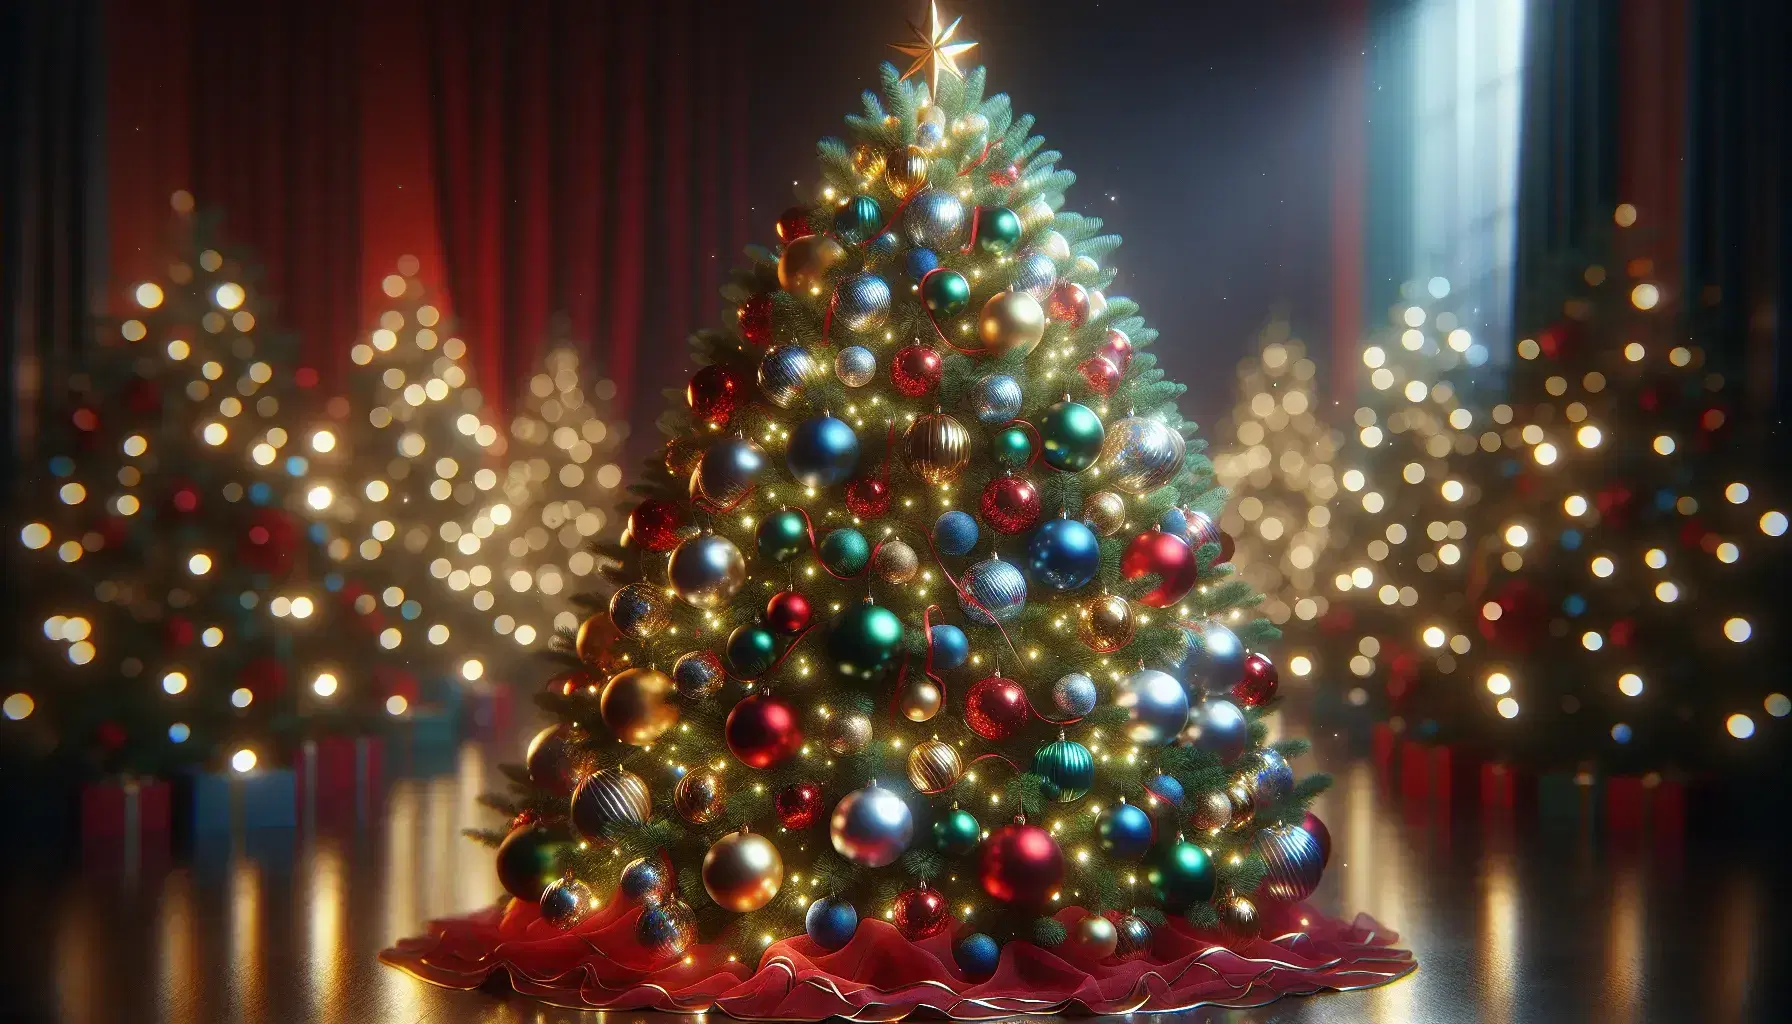 Árbol de Navidad mediano adornado con esferas de colores, cintas rojas y doradas, luces cálidas y una estrella dorada en la cima, sobre falda roja.